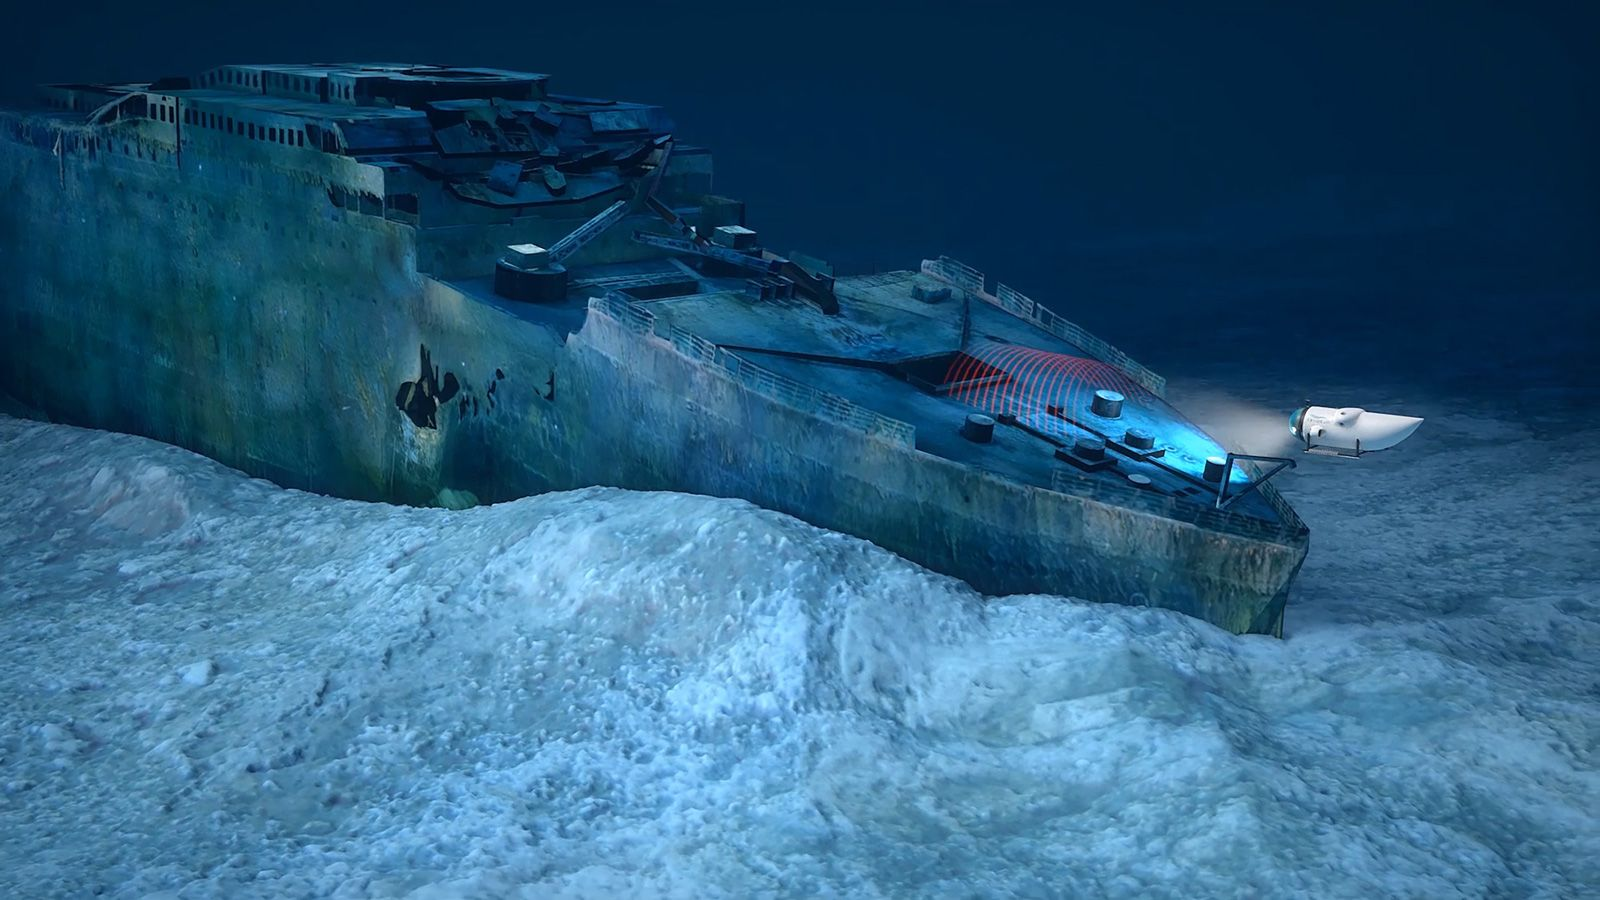 Submarino turístico a caminho do titanic desaparece no oceano. Autoridades locais não sabem informar se havia passageiros ou mesmo origem do veículo que tentou viajar até o titanic. Entenda o caso